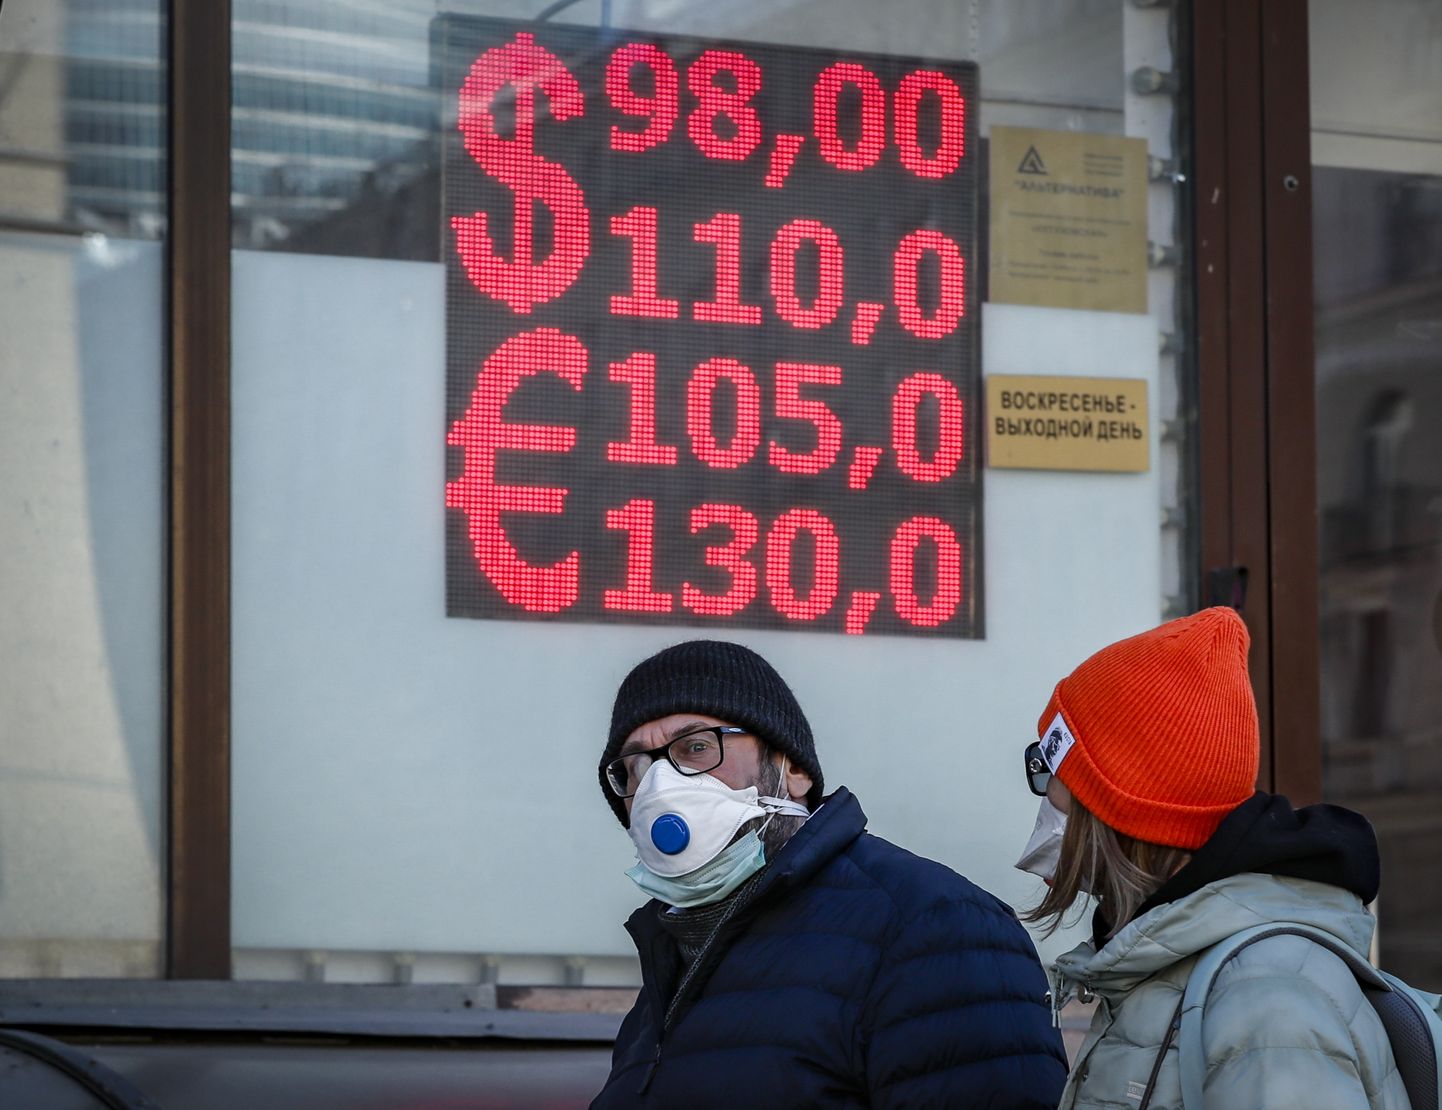 Valuutavahetus Venemaal